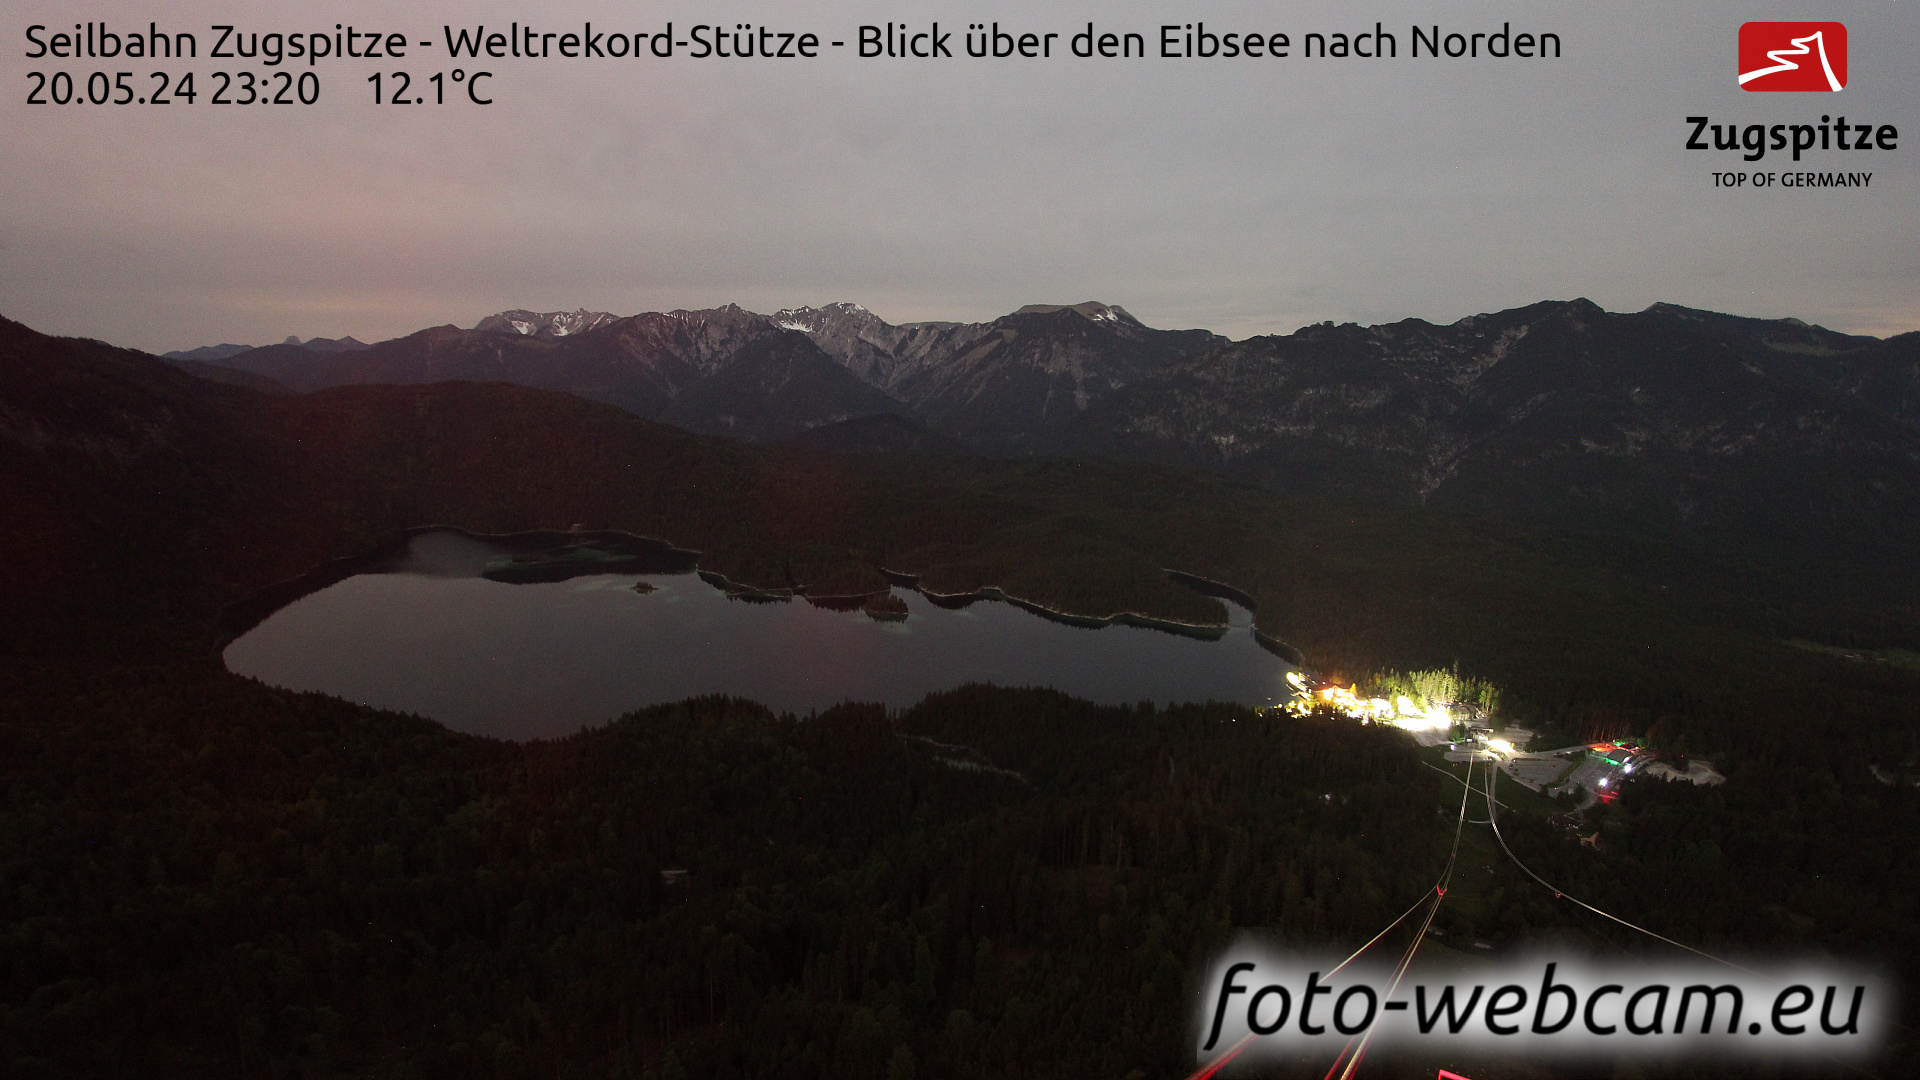 Zugspitze Wed. 23:49